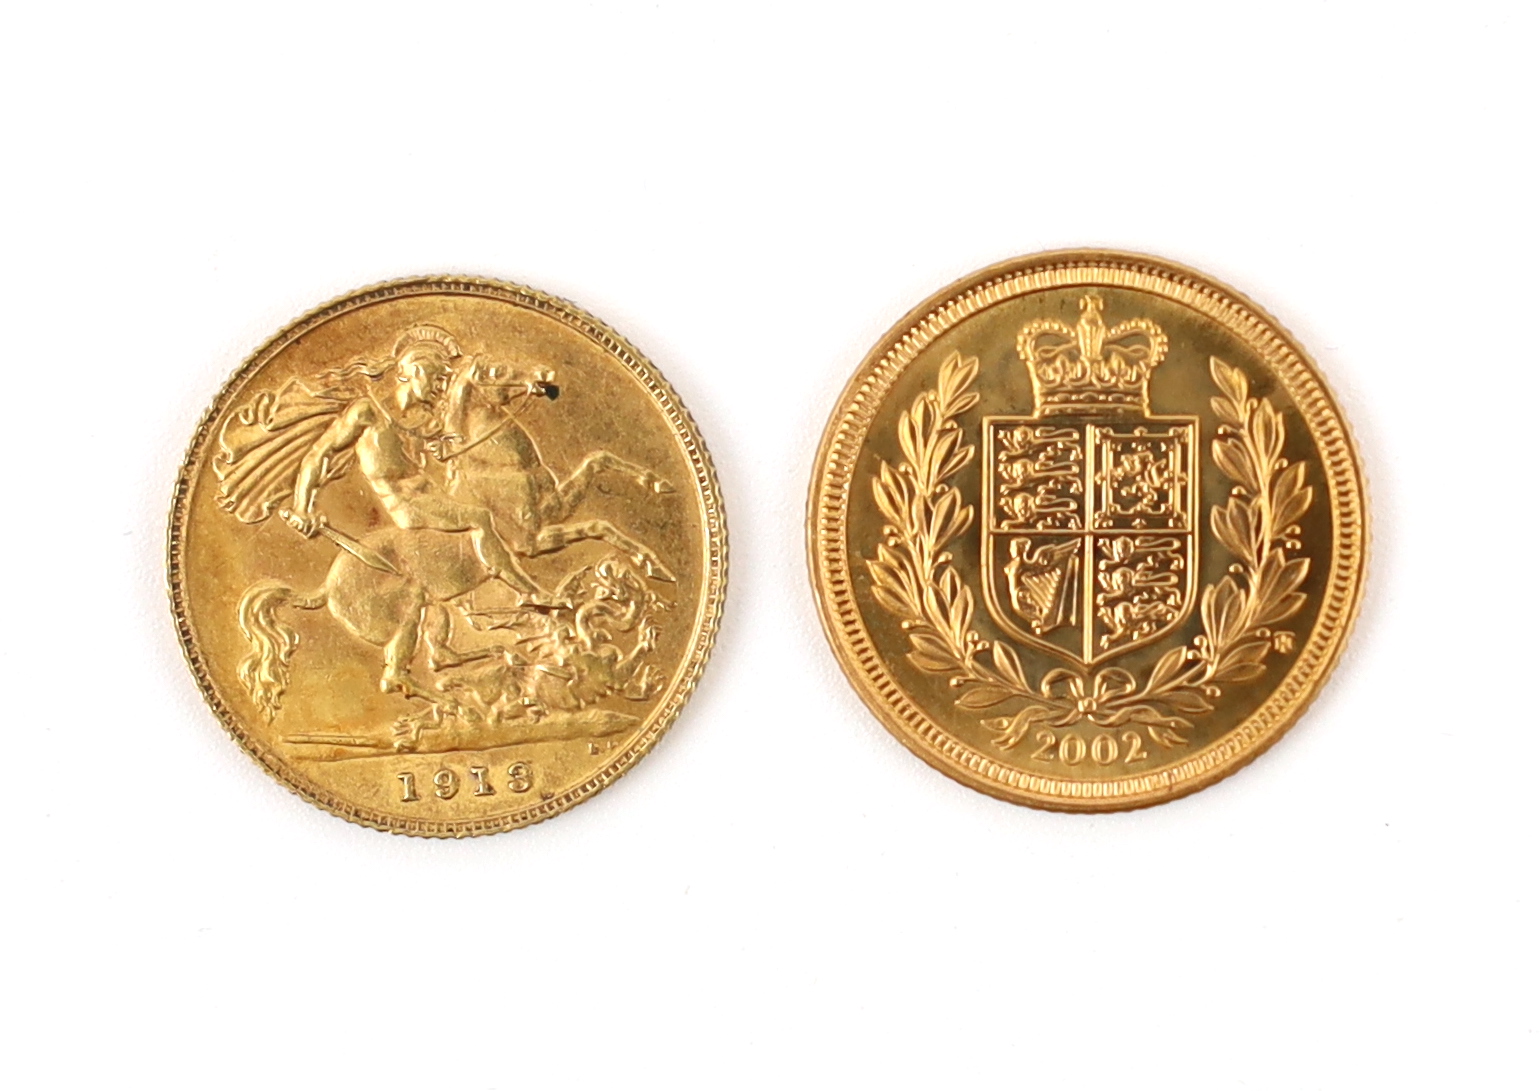 British Gold coins, George V half sovereign, 1913, EF (S4006) and Elizabeth II half sovereign, 2002, rev. Shield (S4441) (2)